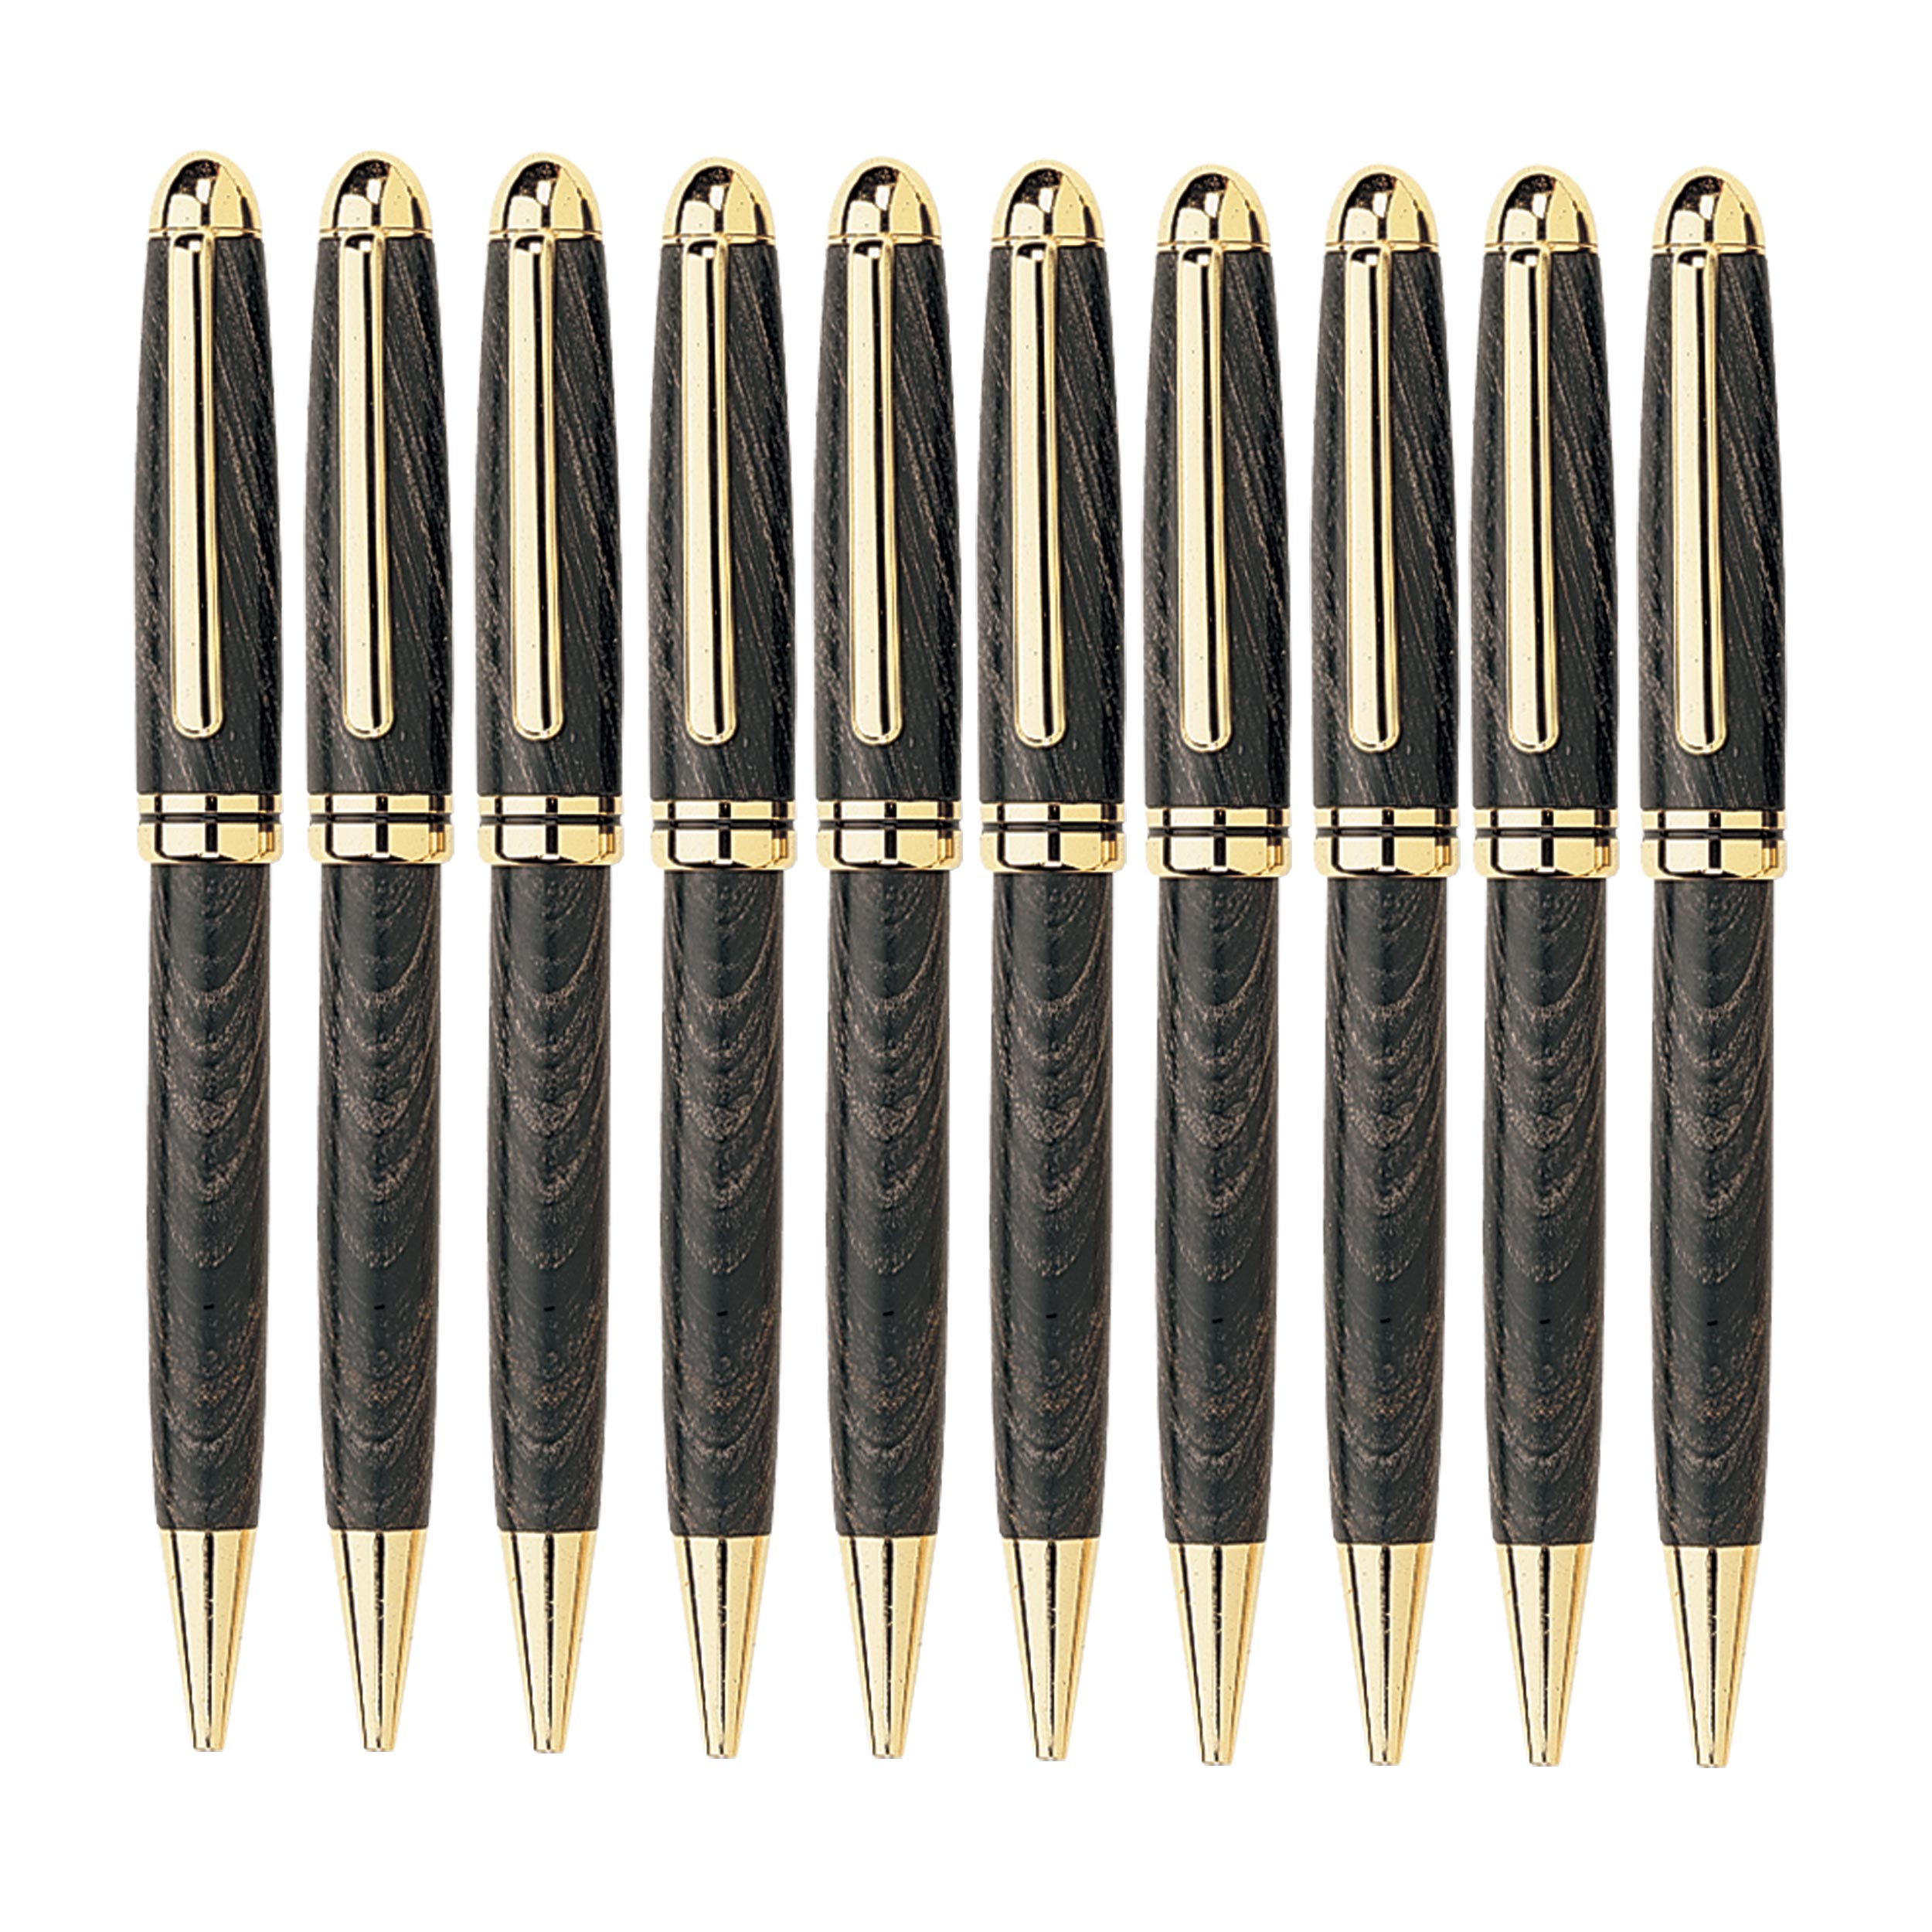 European Style Ballpoint Pen Kit 10 Pack - Gold